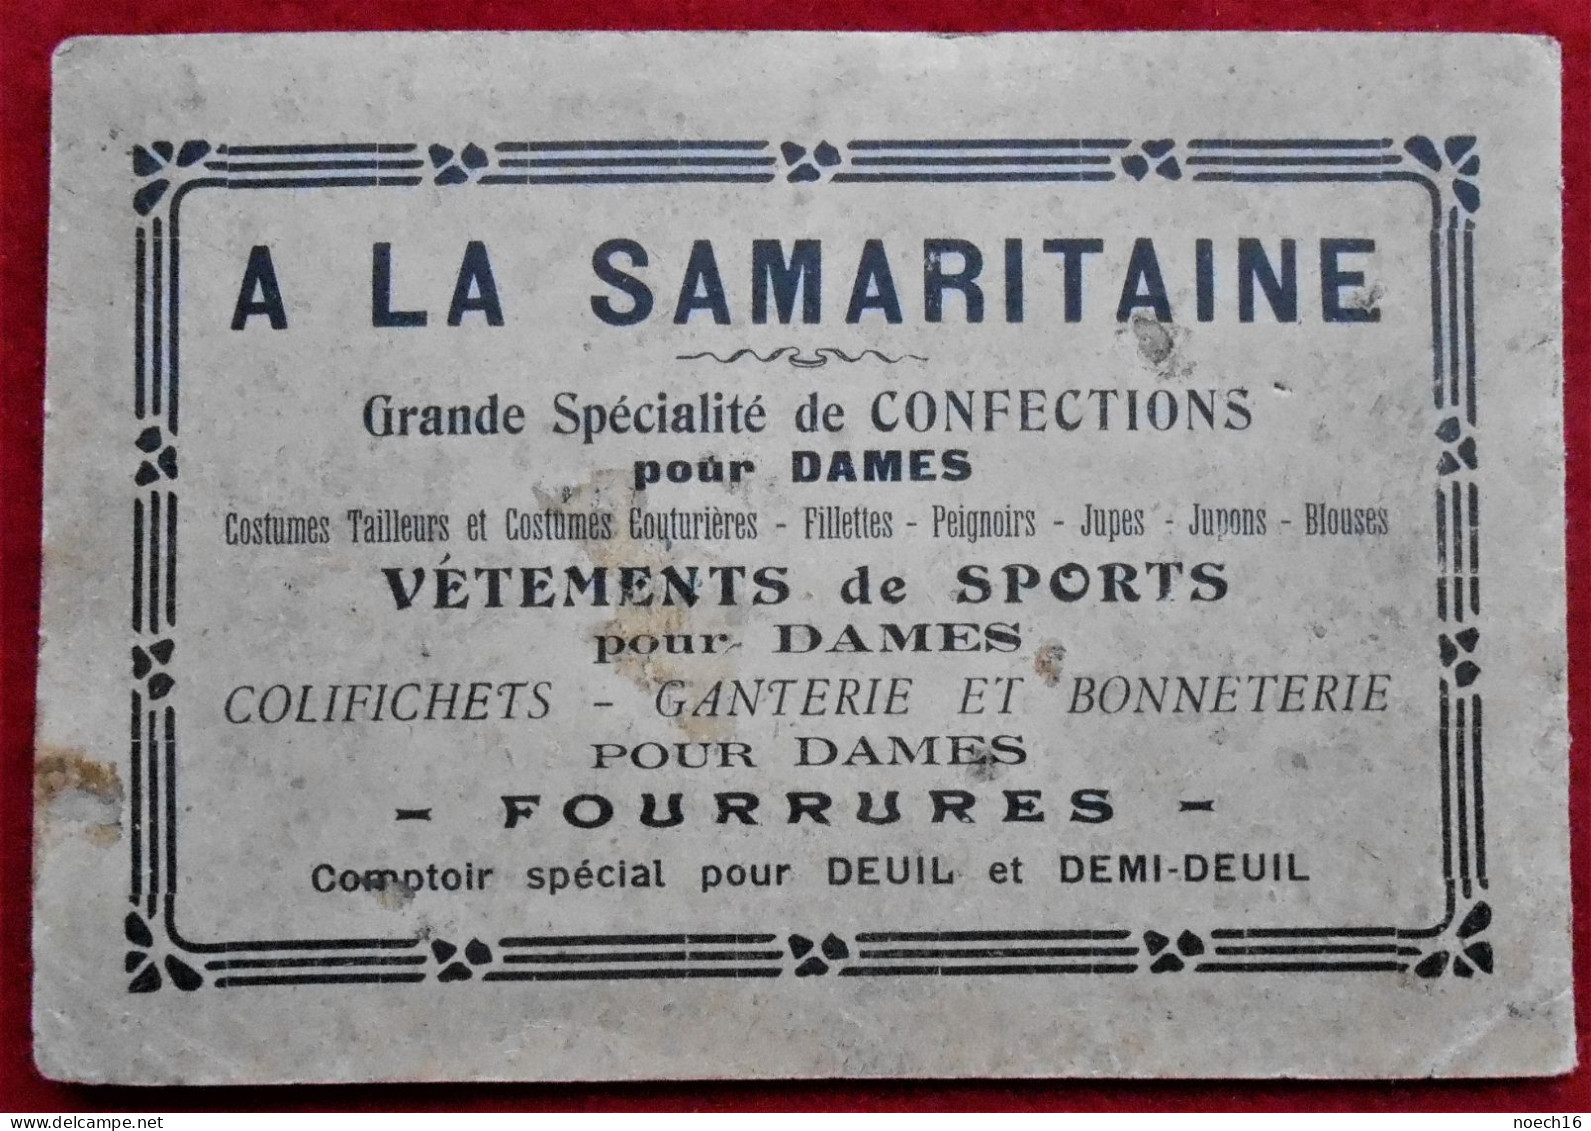 Carnet De Décalques Armes D'Epinal Offert Par La Samaritaine, Boulevard Anspach, Bruxelles - Publicités